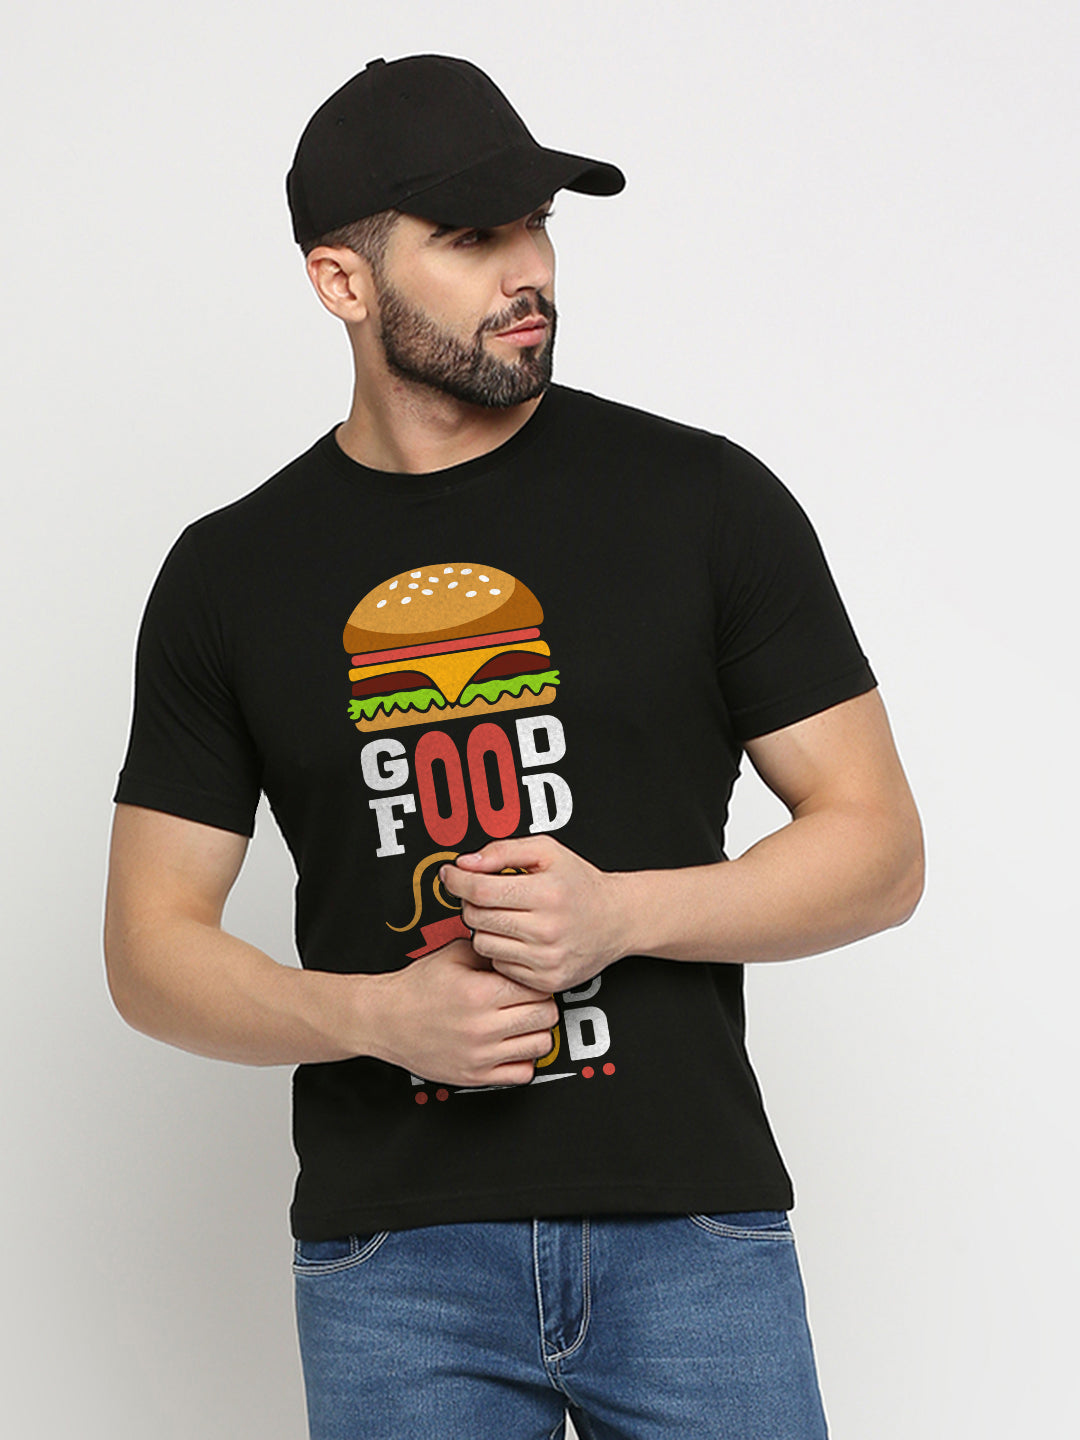 Good Food is Good Mood T-Shirt